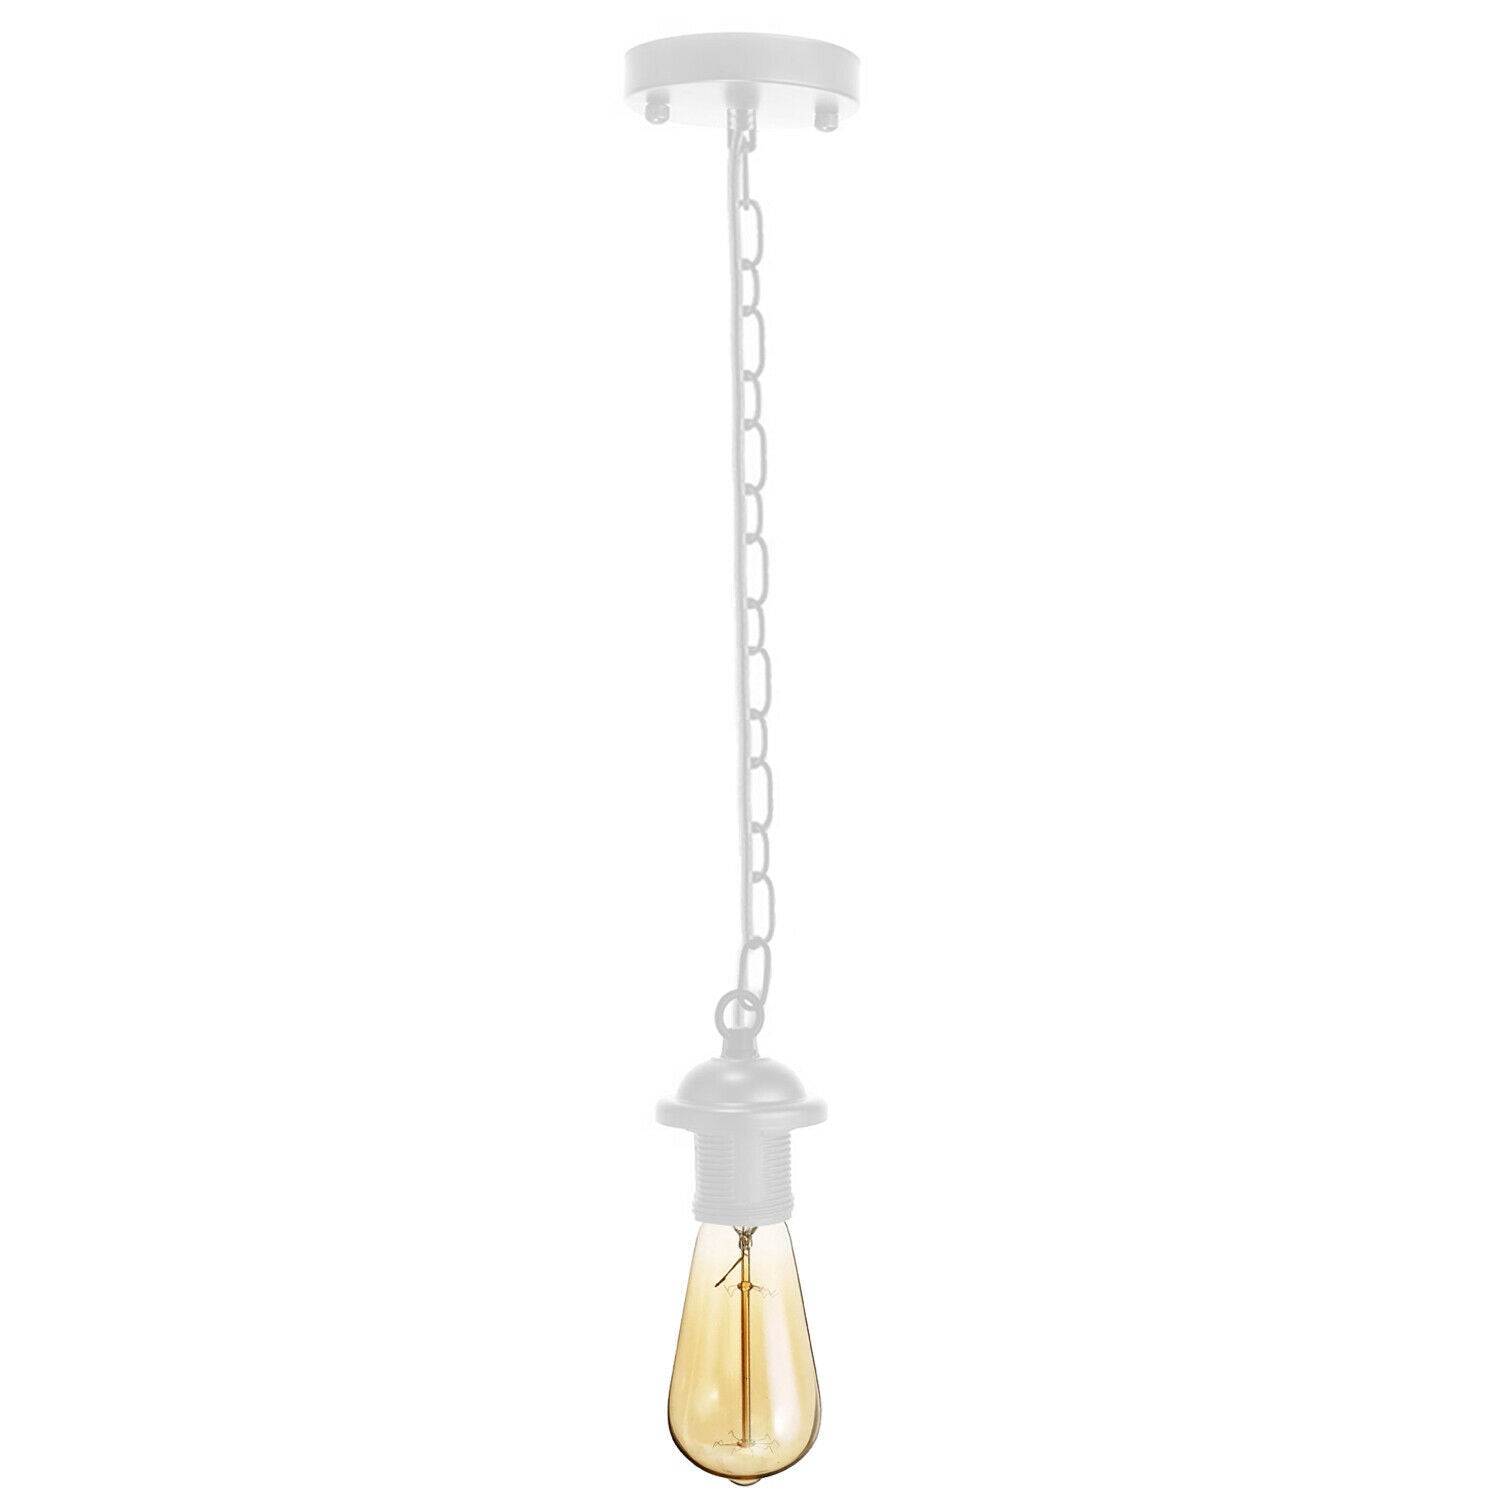 White Metal Ceiing E27 Lamp Holder Pendant Light With Chain~1779 - LEDSone UK Ltd